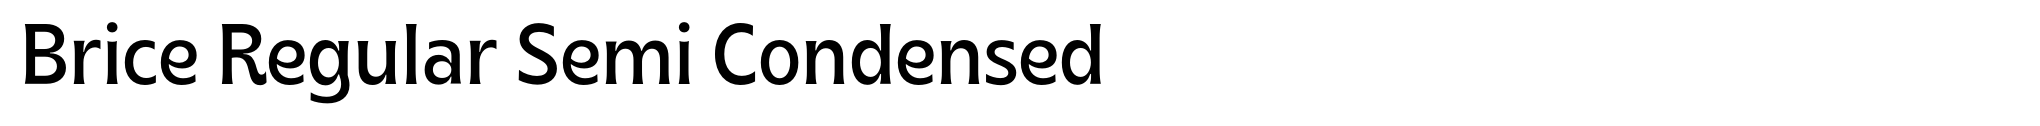 Brice Regular Semi Condensed image